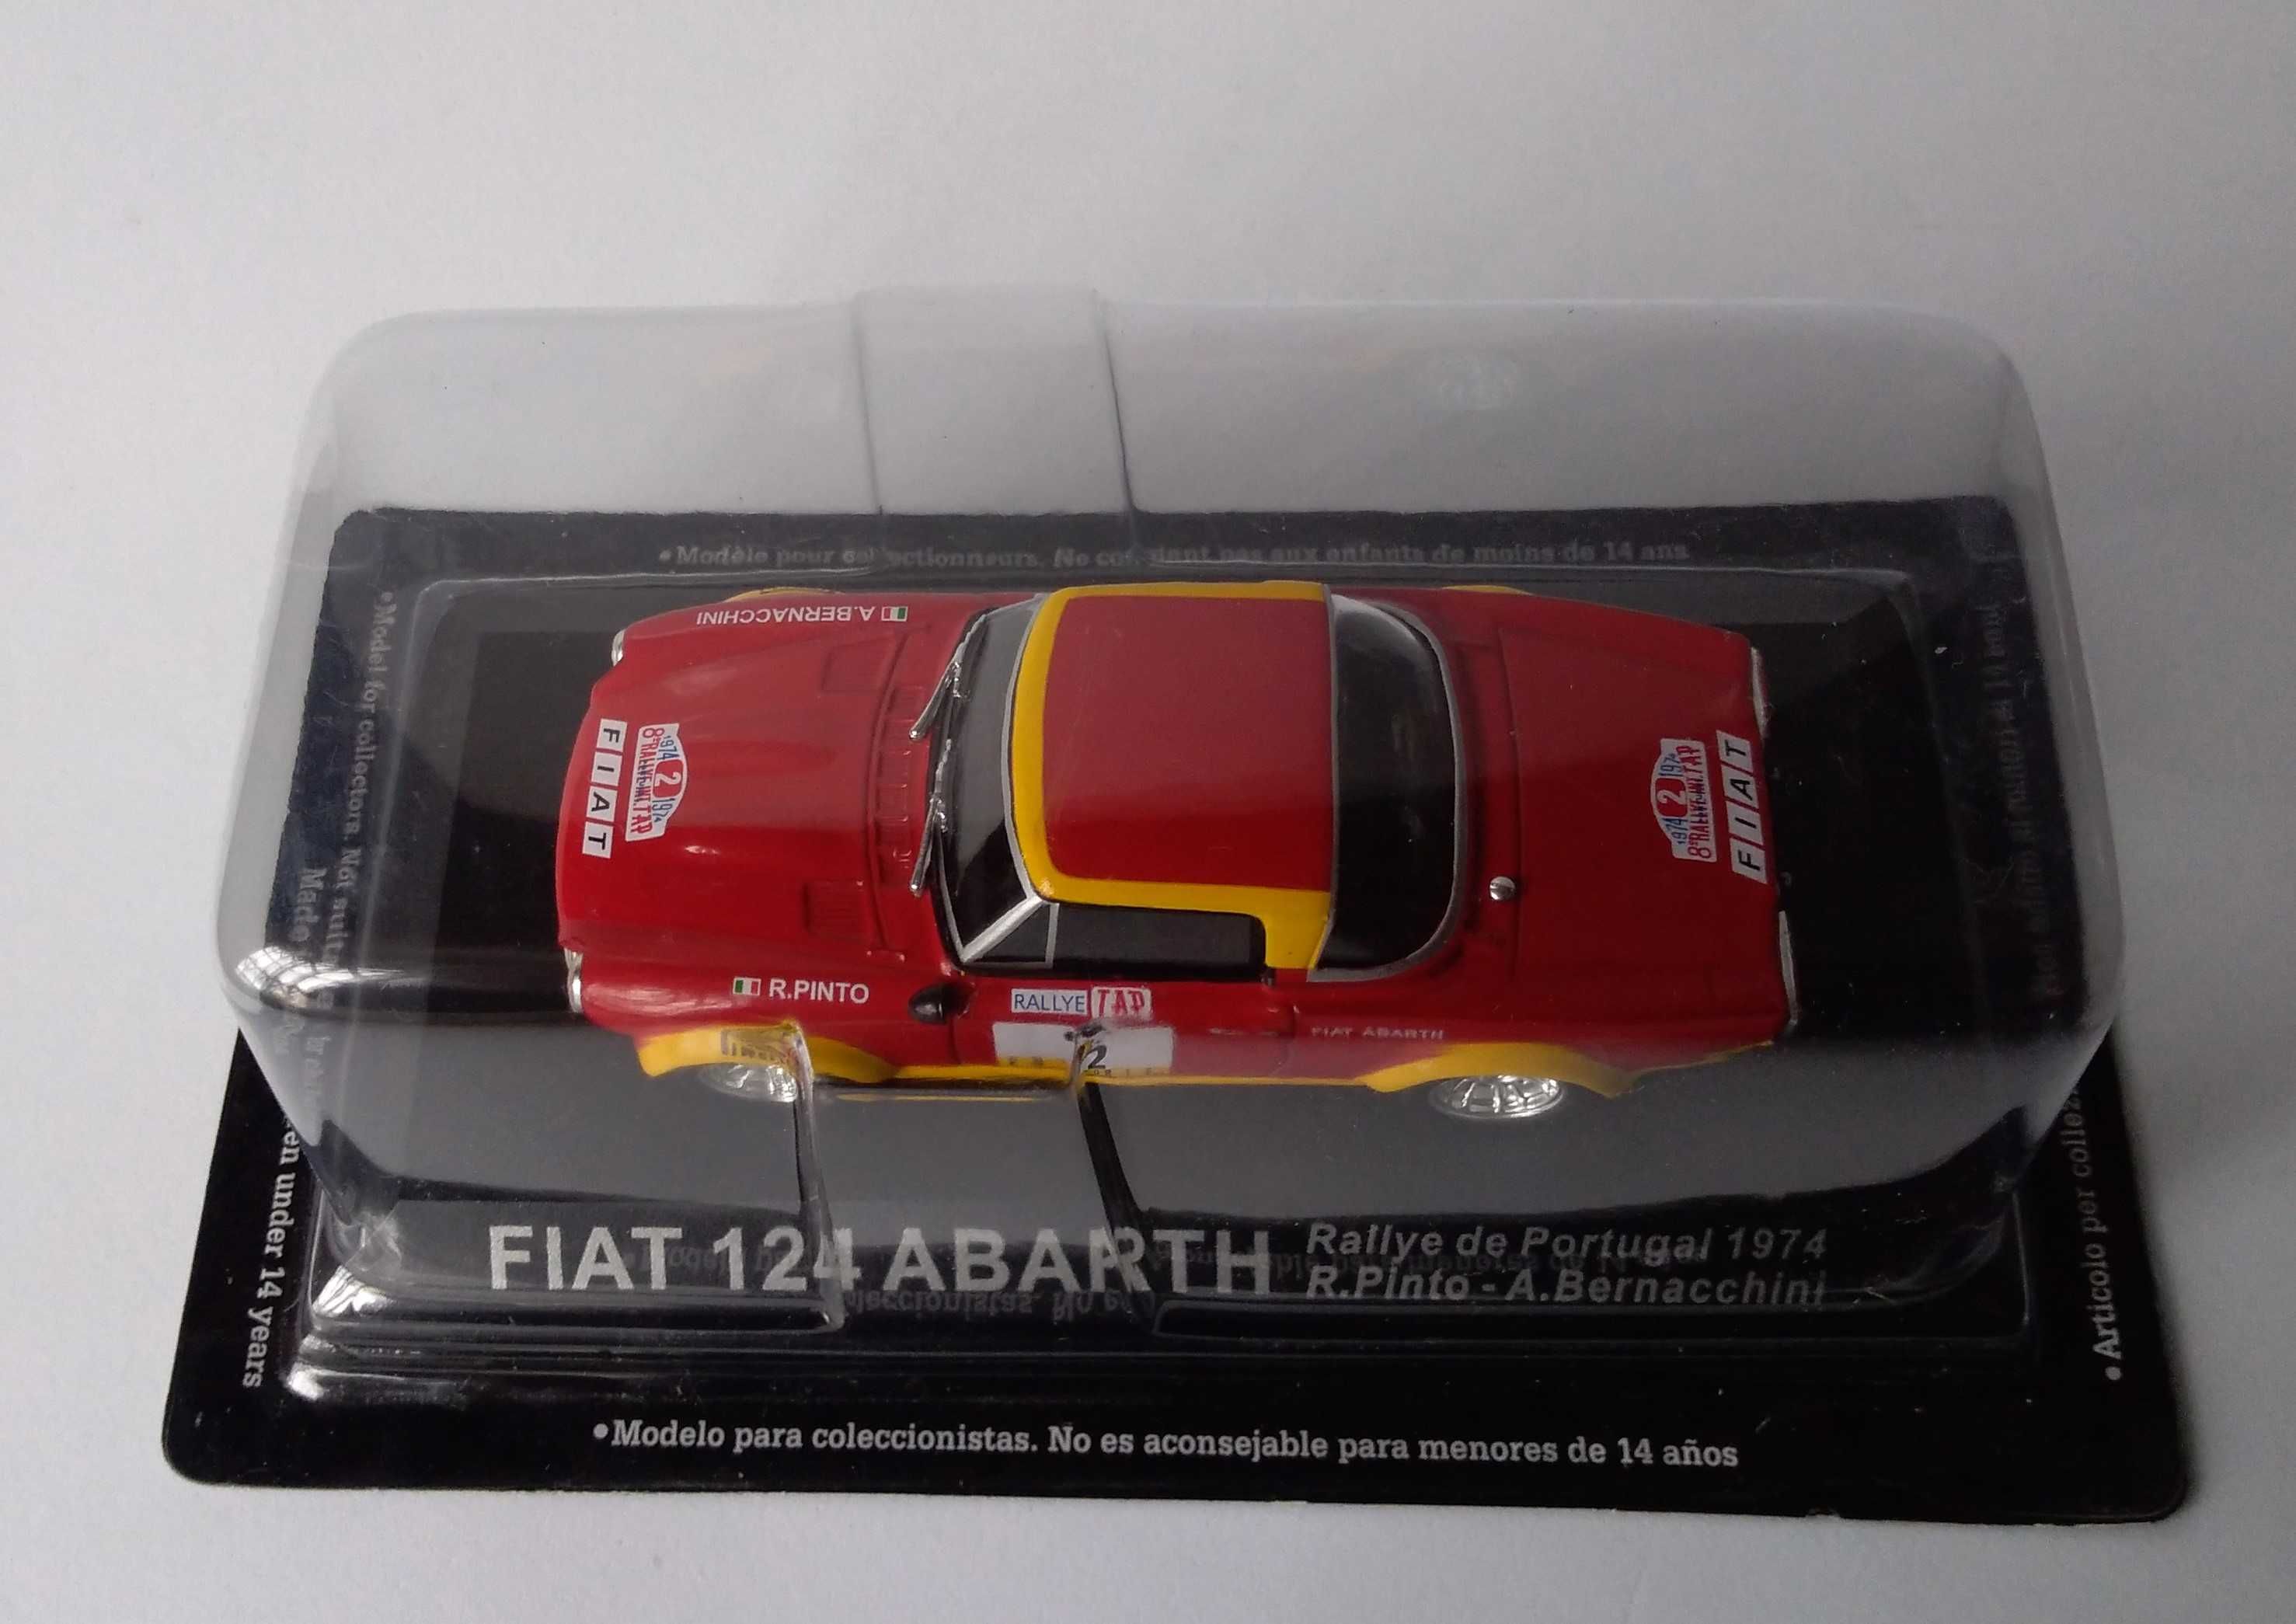 Fiat 124 Abarth, vencedor  Rally de Portugal de 1974, piloto R. Pinto